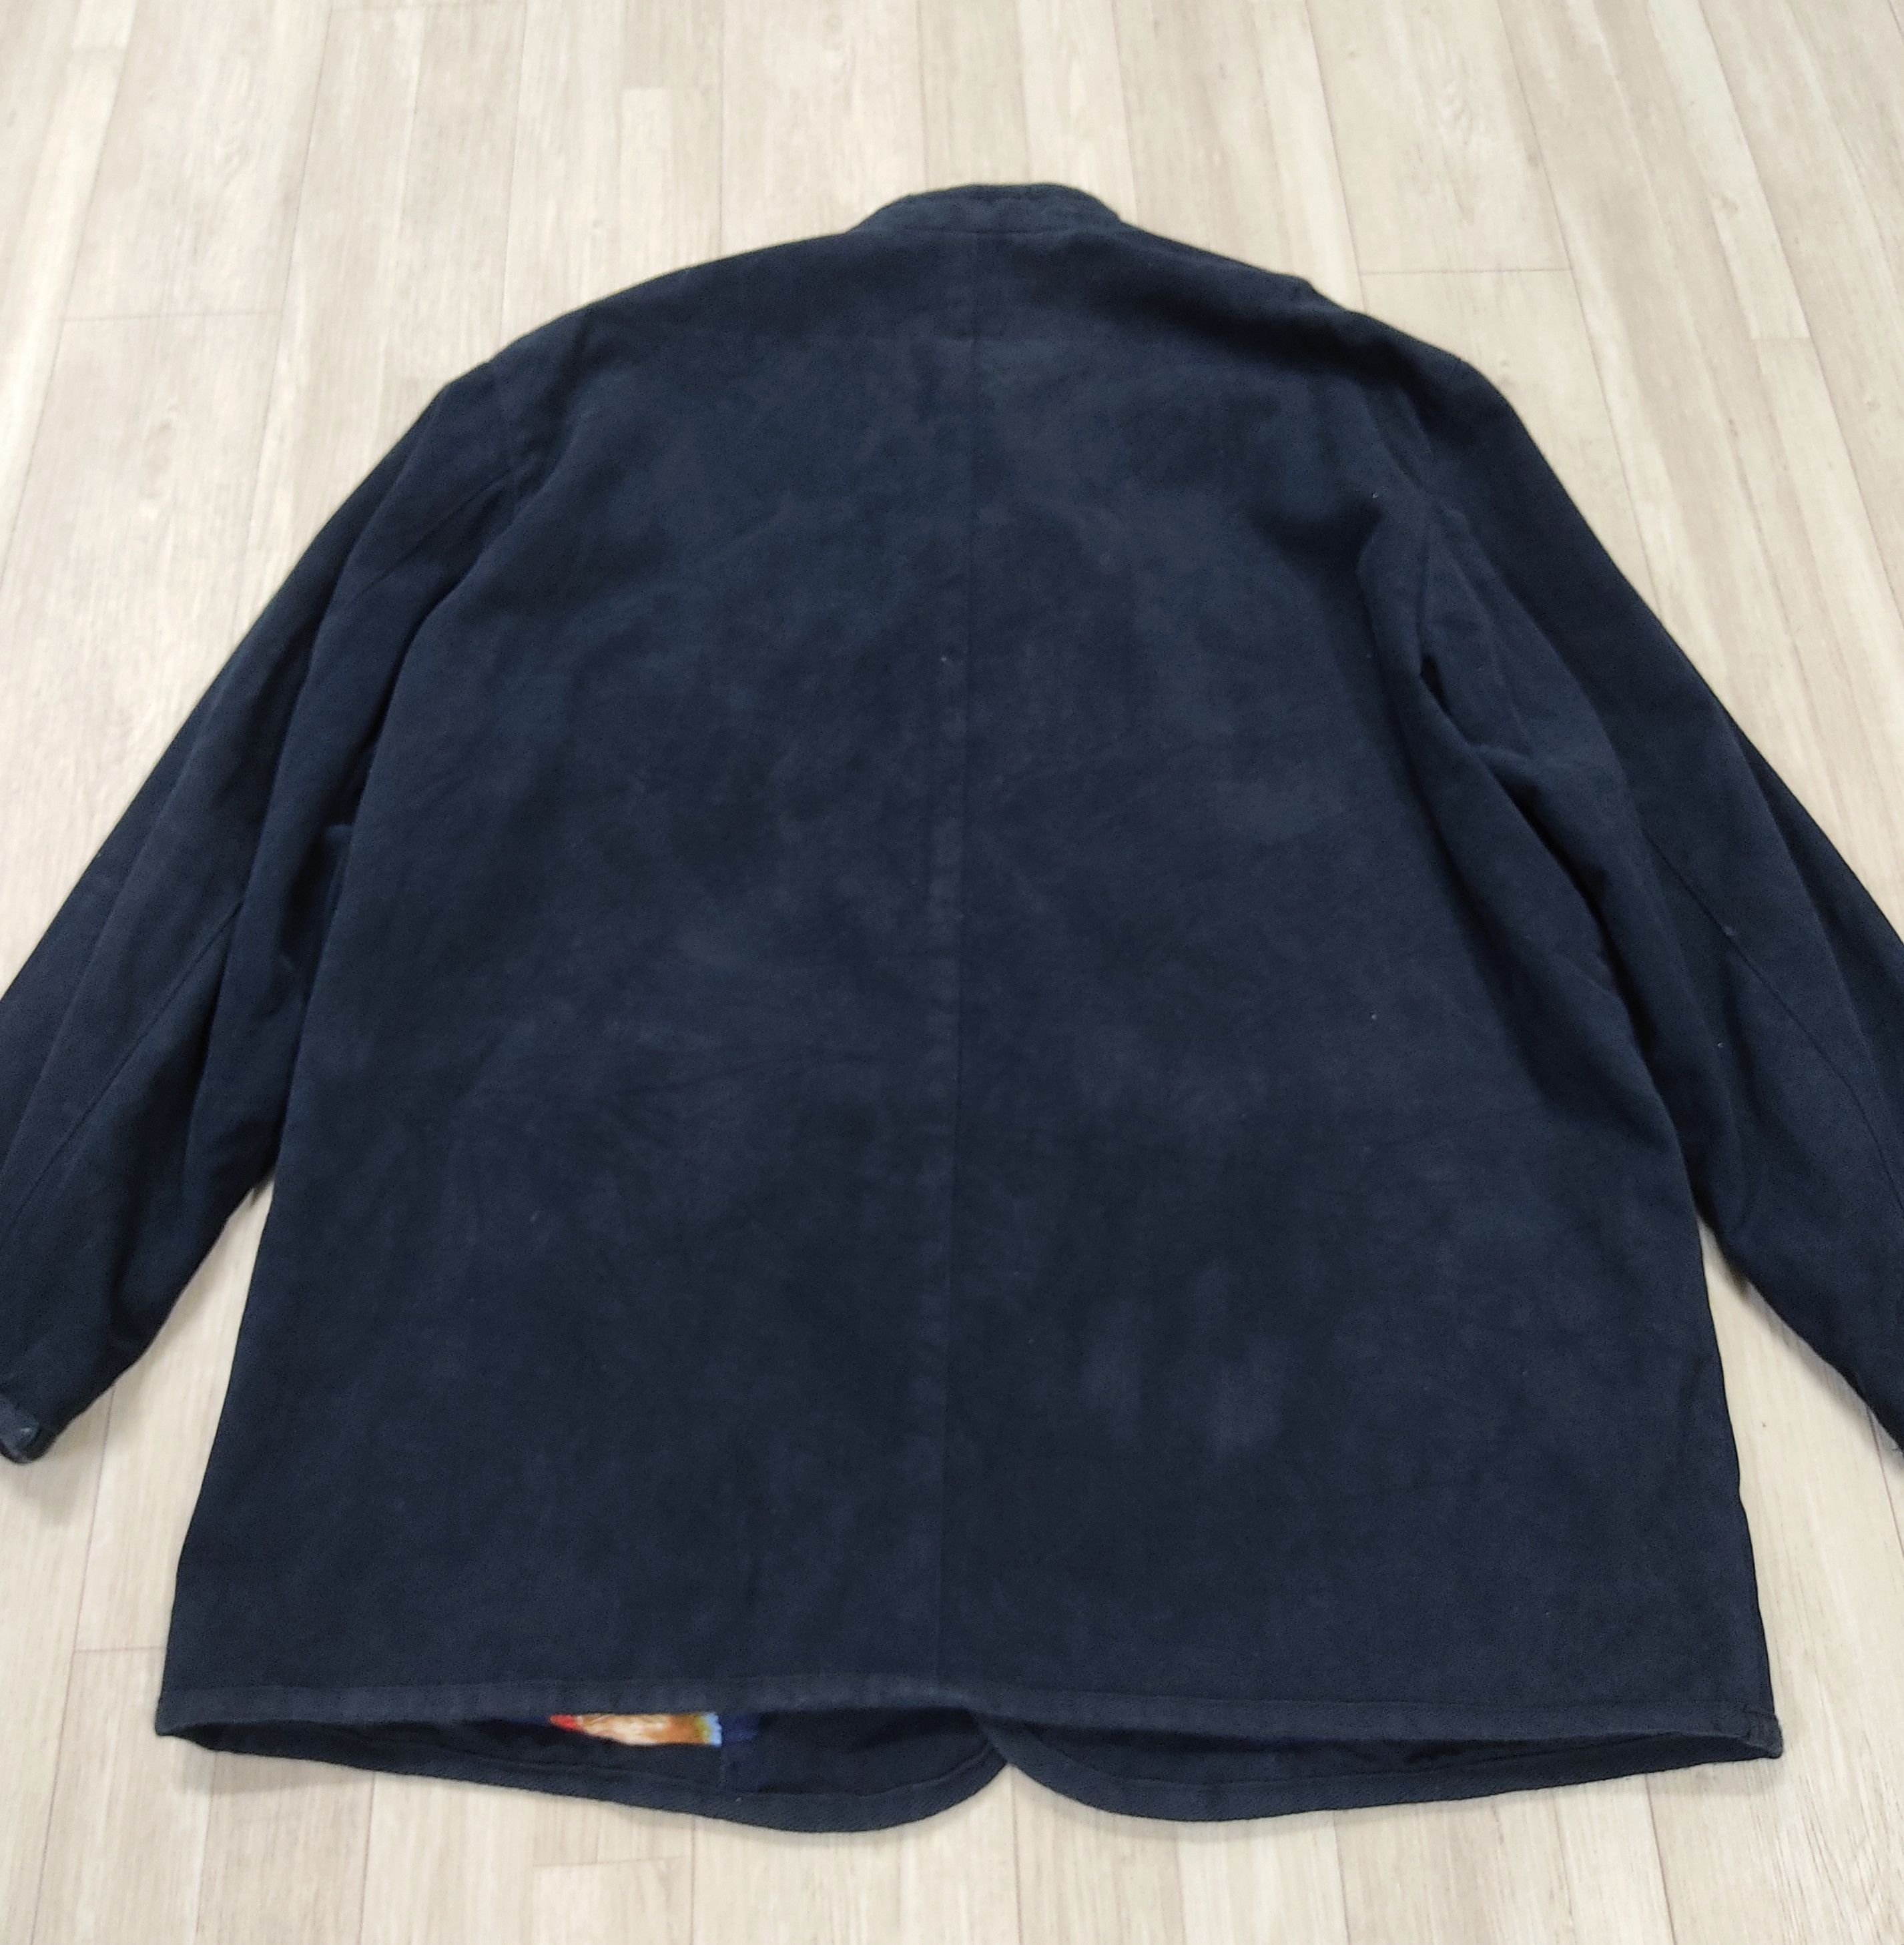 Archival Clothing - The PAPAS Mantere De Heming Navy Blue Deck Jacket - 14